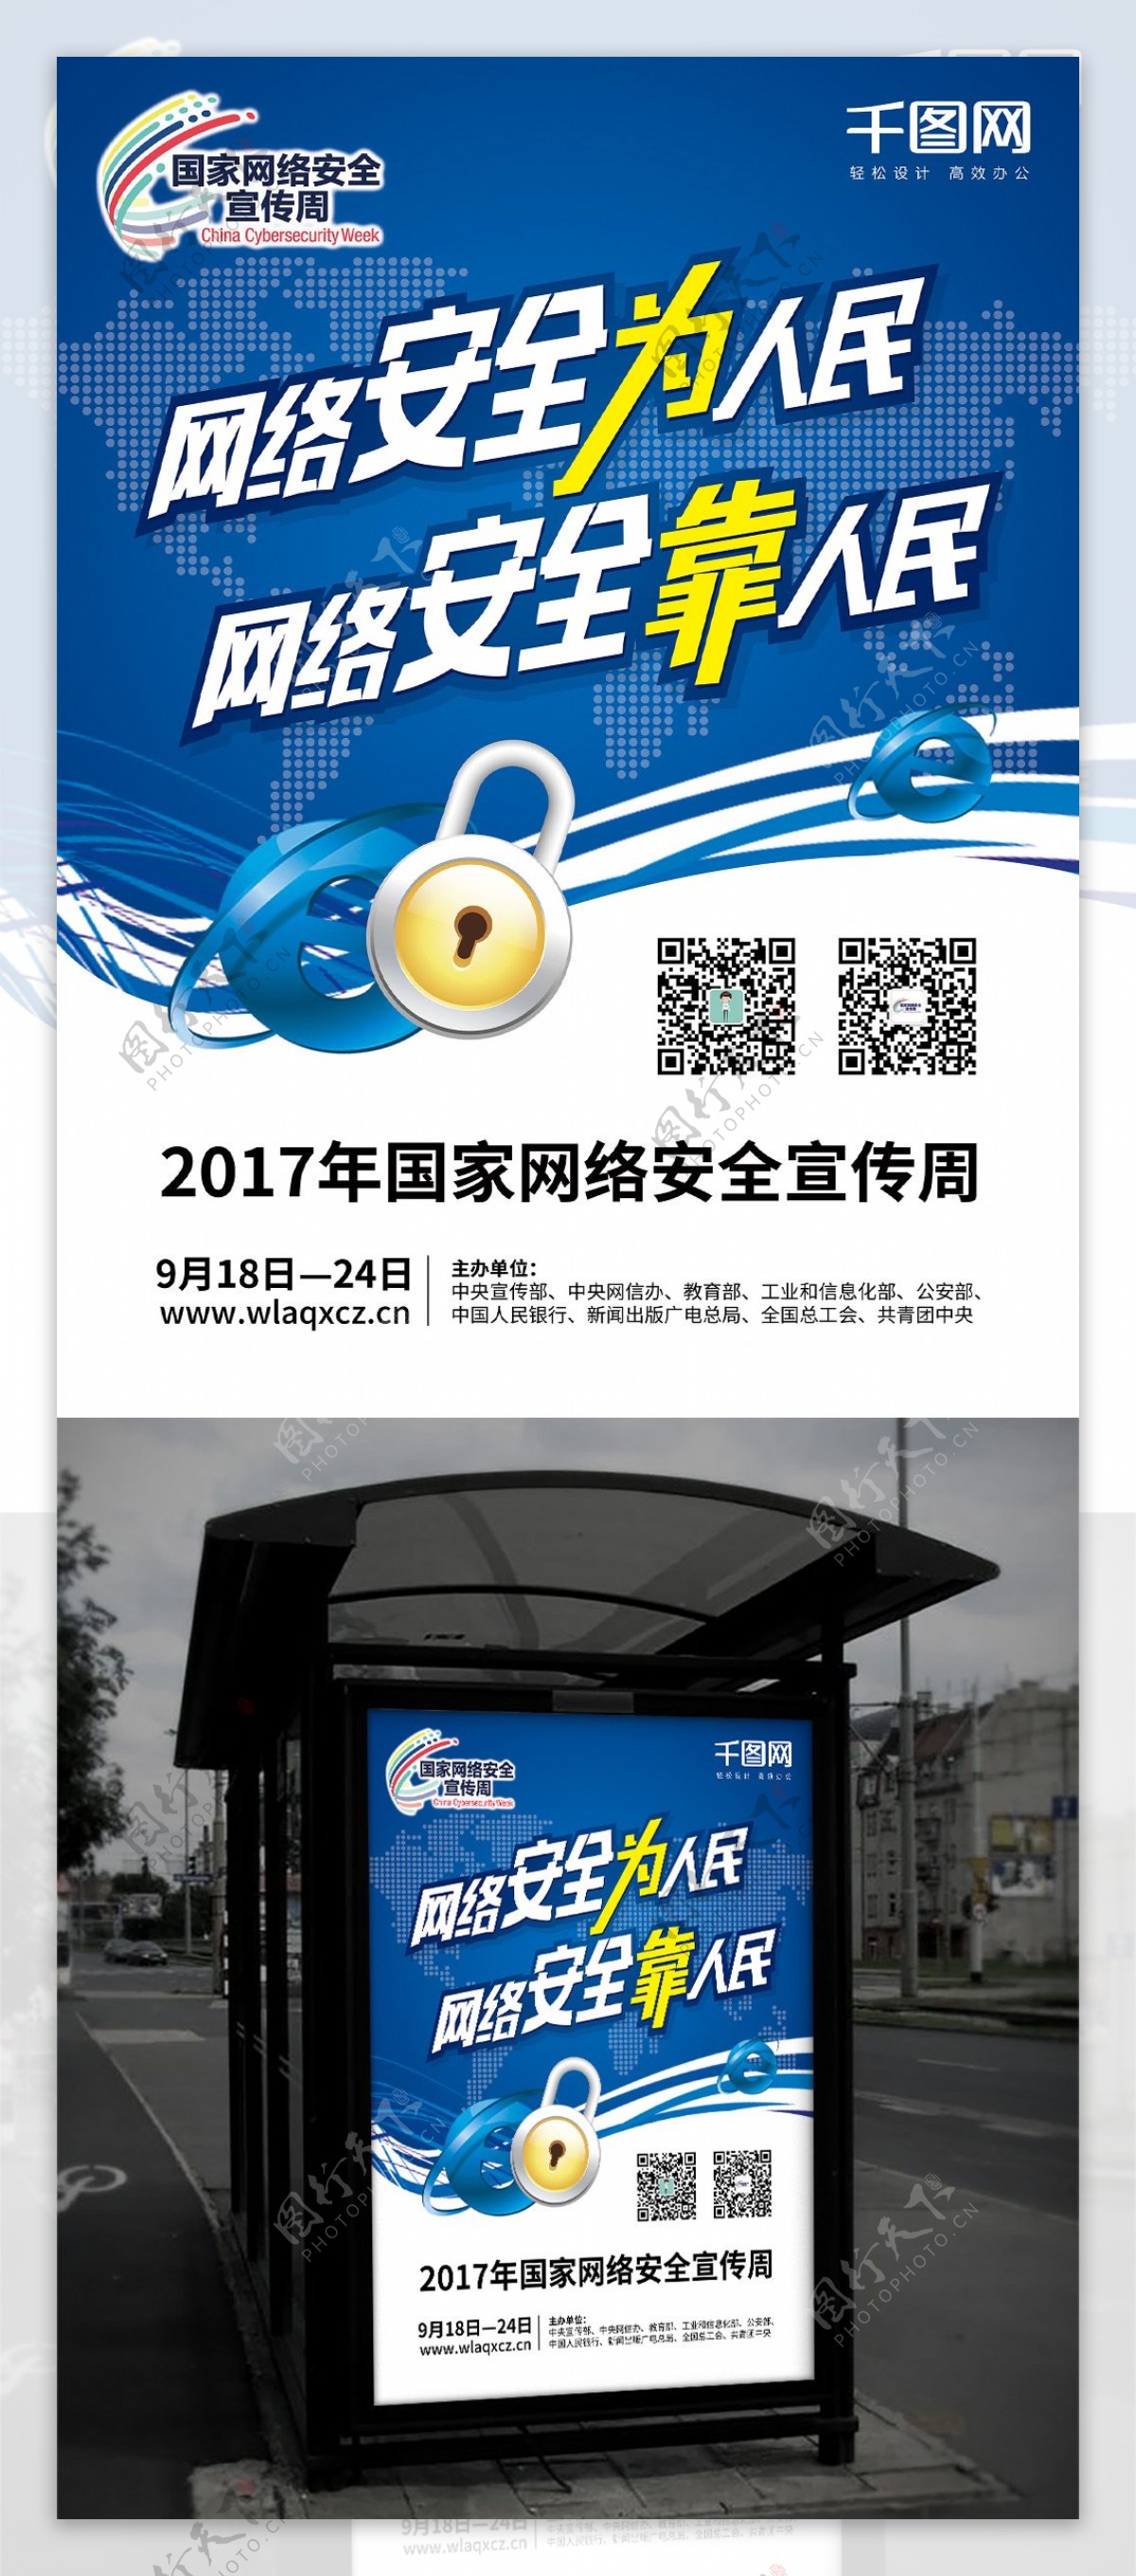 2017国家网络安全宣传周海报蓝色